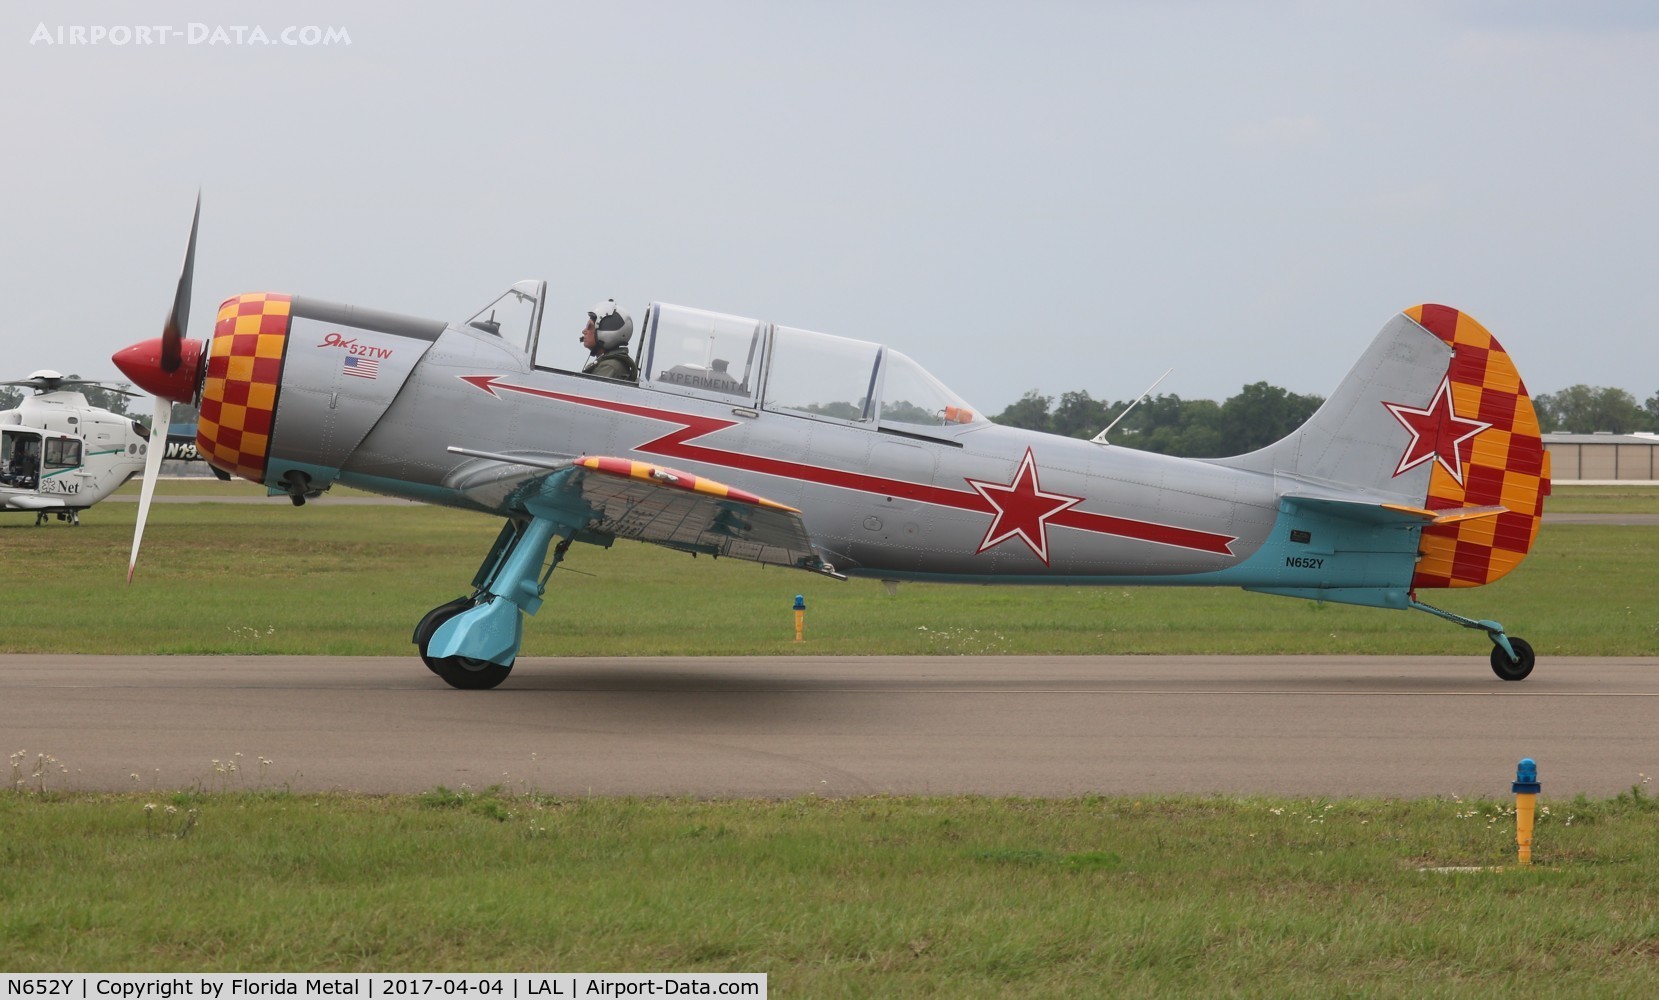 N652Y, 2004 Yakovlev (Aerostar) Yak-52TW C/N 0412510, Yak-52